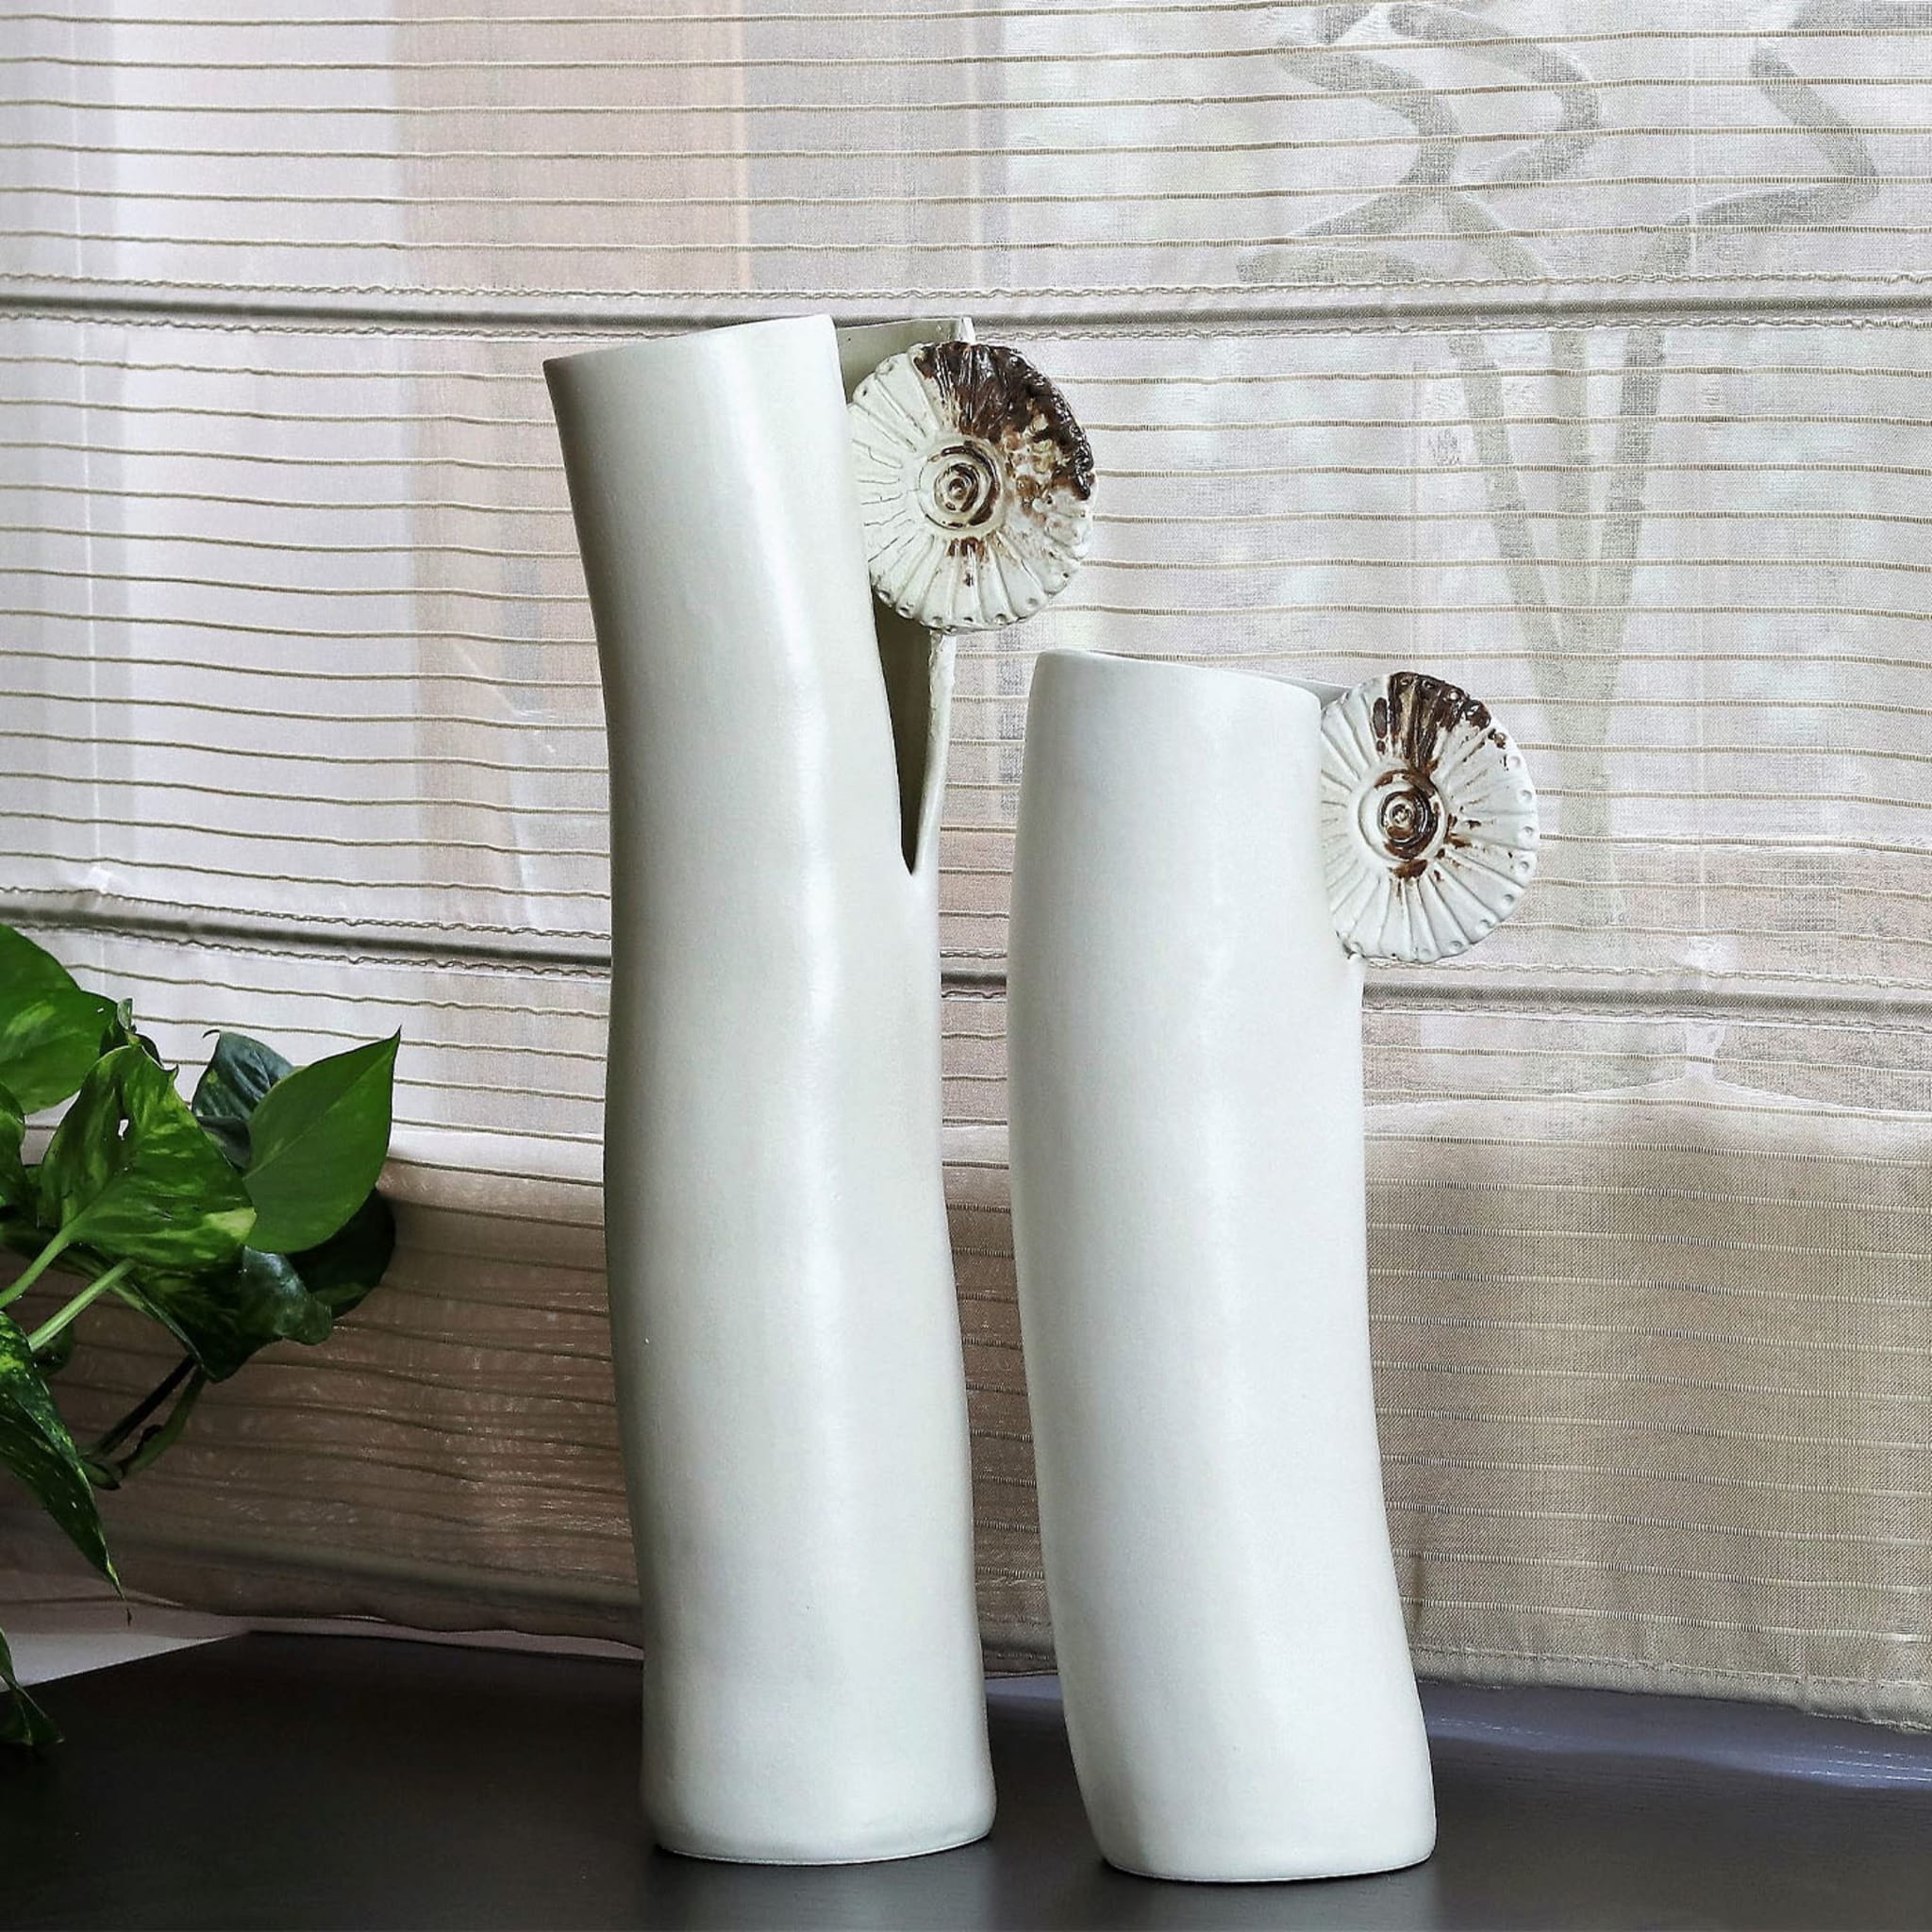 NUR White Vase - Alternative view 2